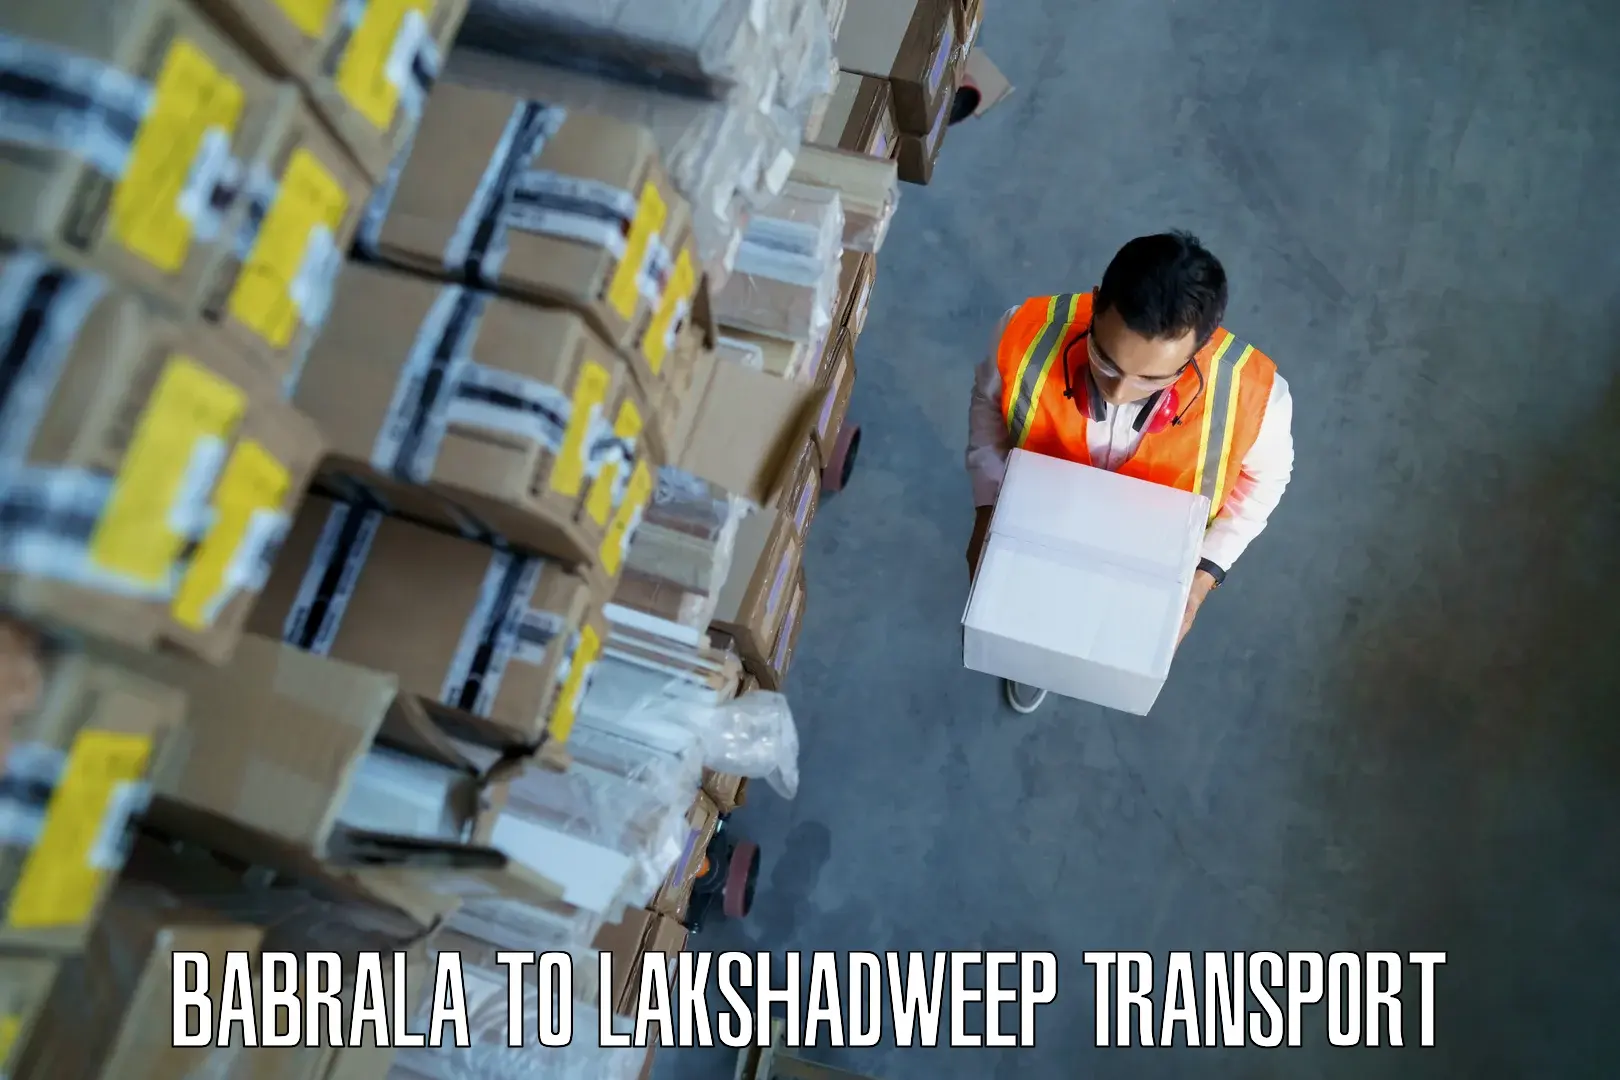 Furniture transport service Babrala to Lakshadweep